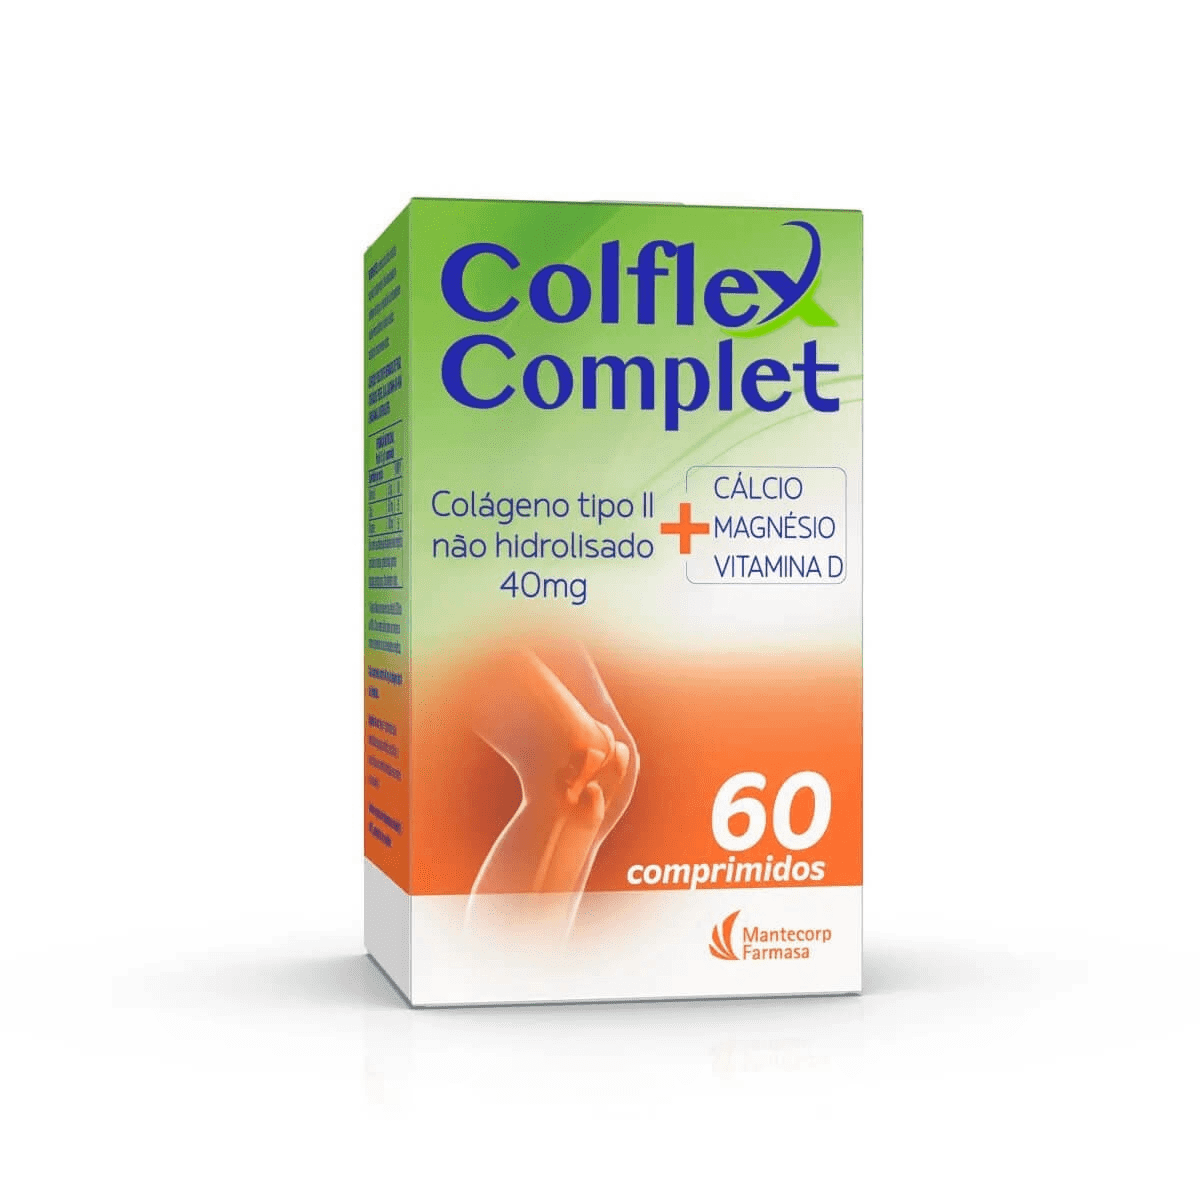 Colflex Complet 60 Comprimidos Farmácia Indiana